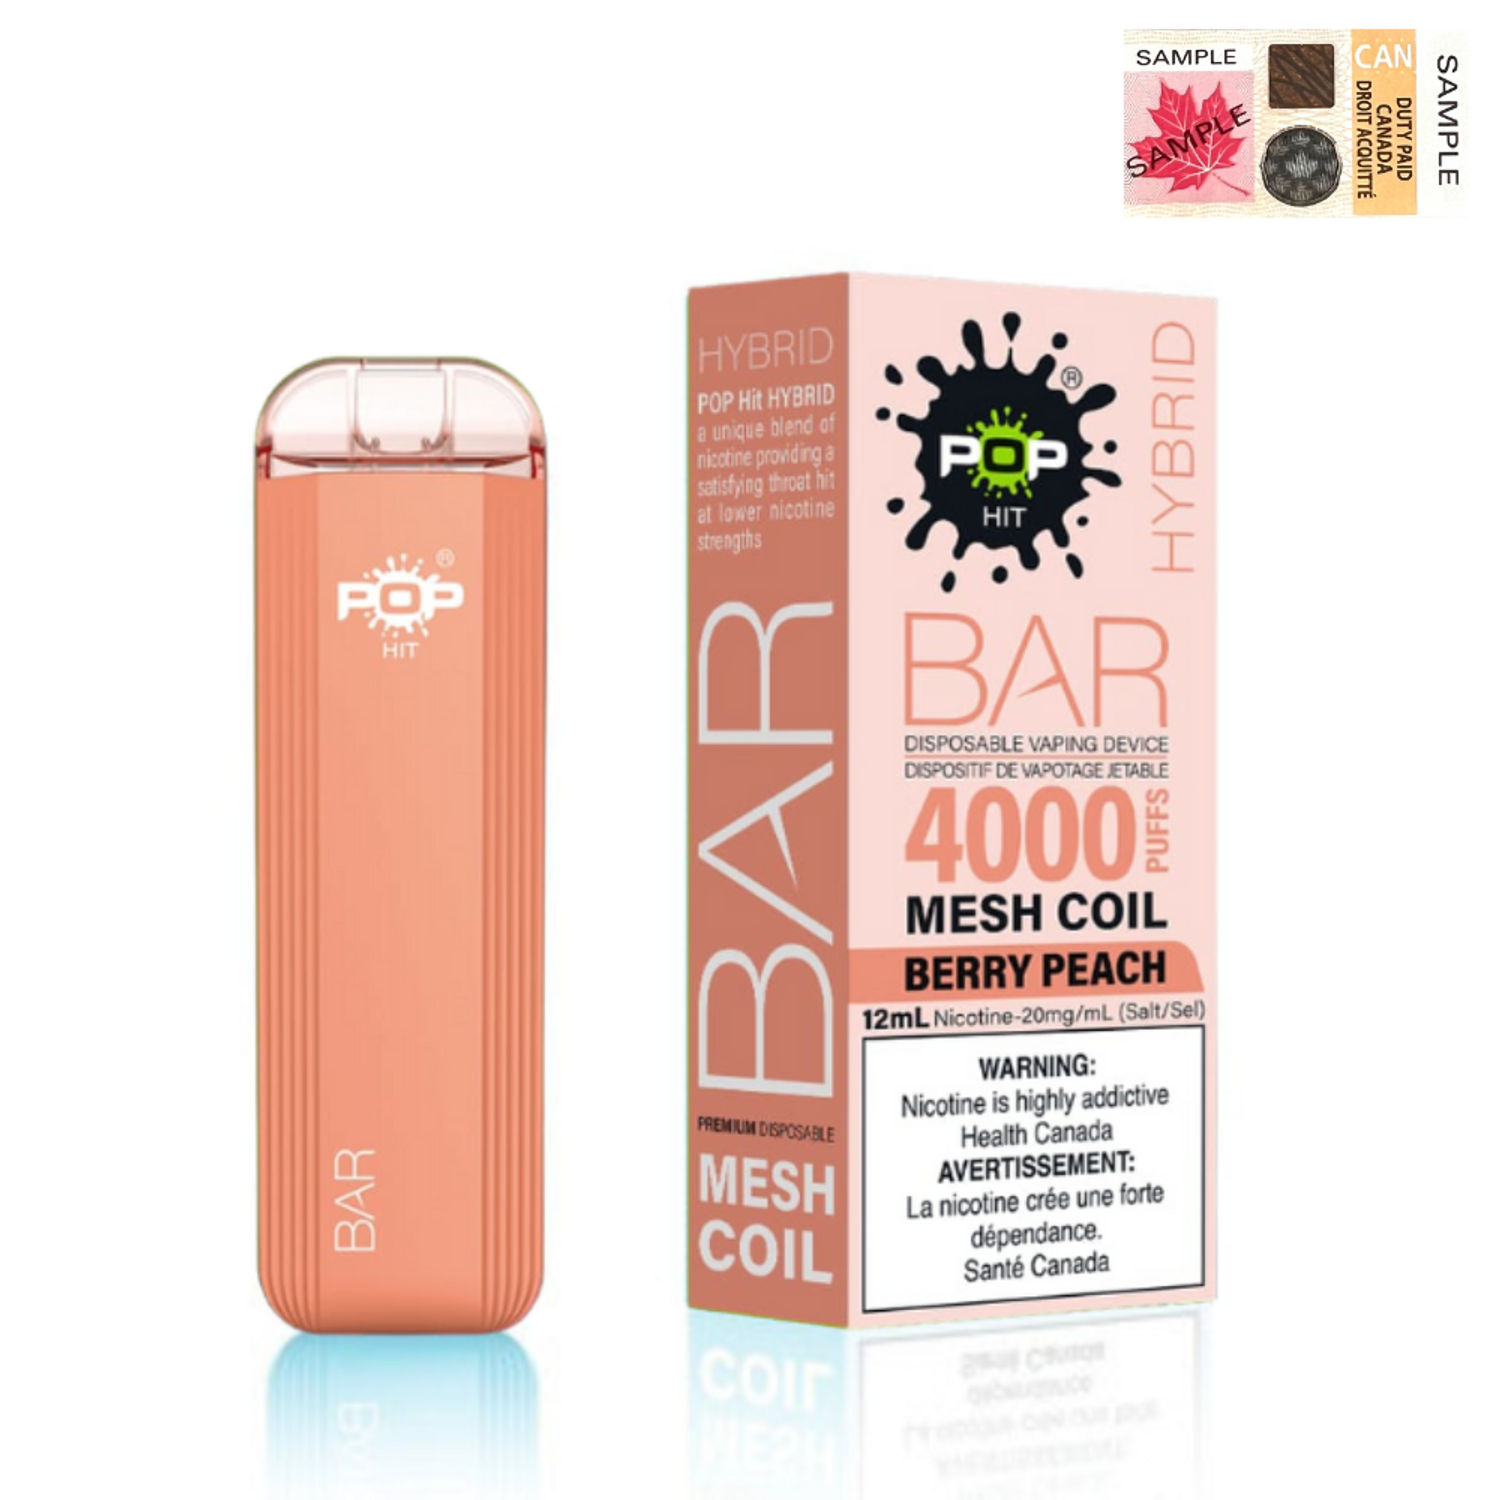 Berry Peach - Pop Hybrid Bar 4000 Puff  - 5pc/Carton